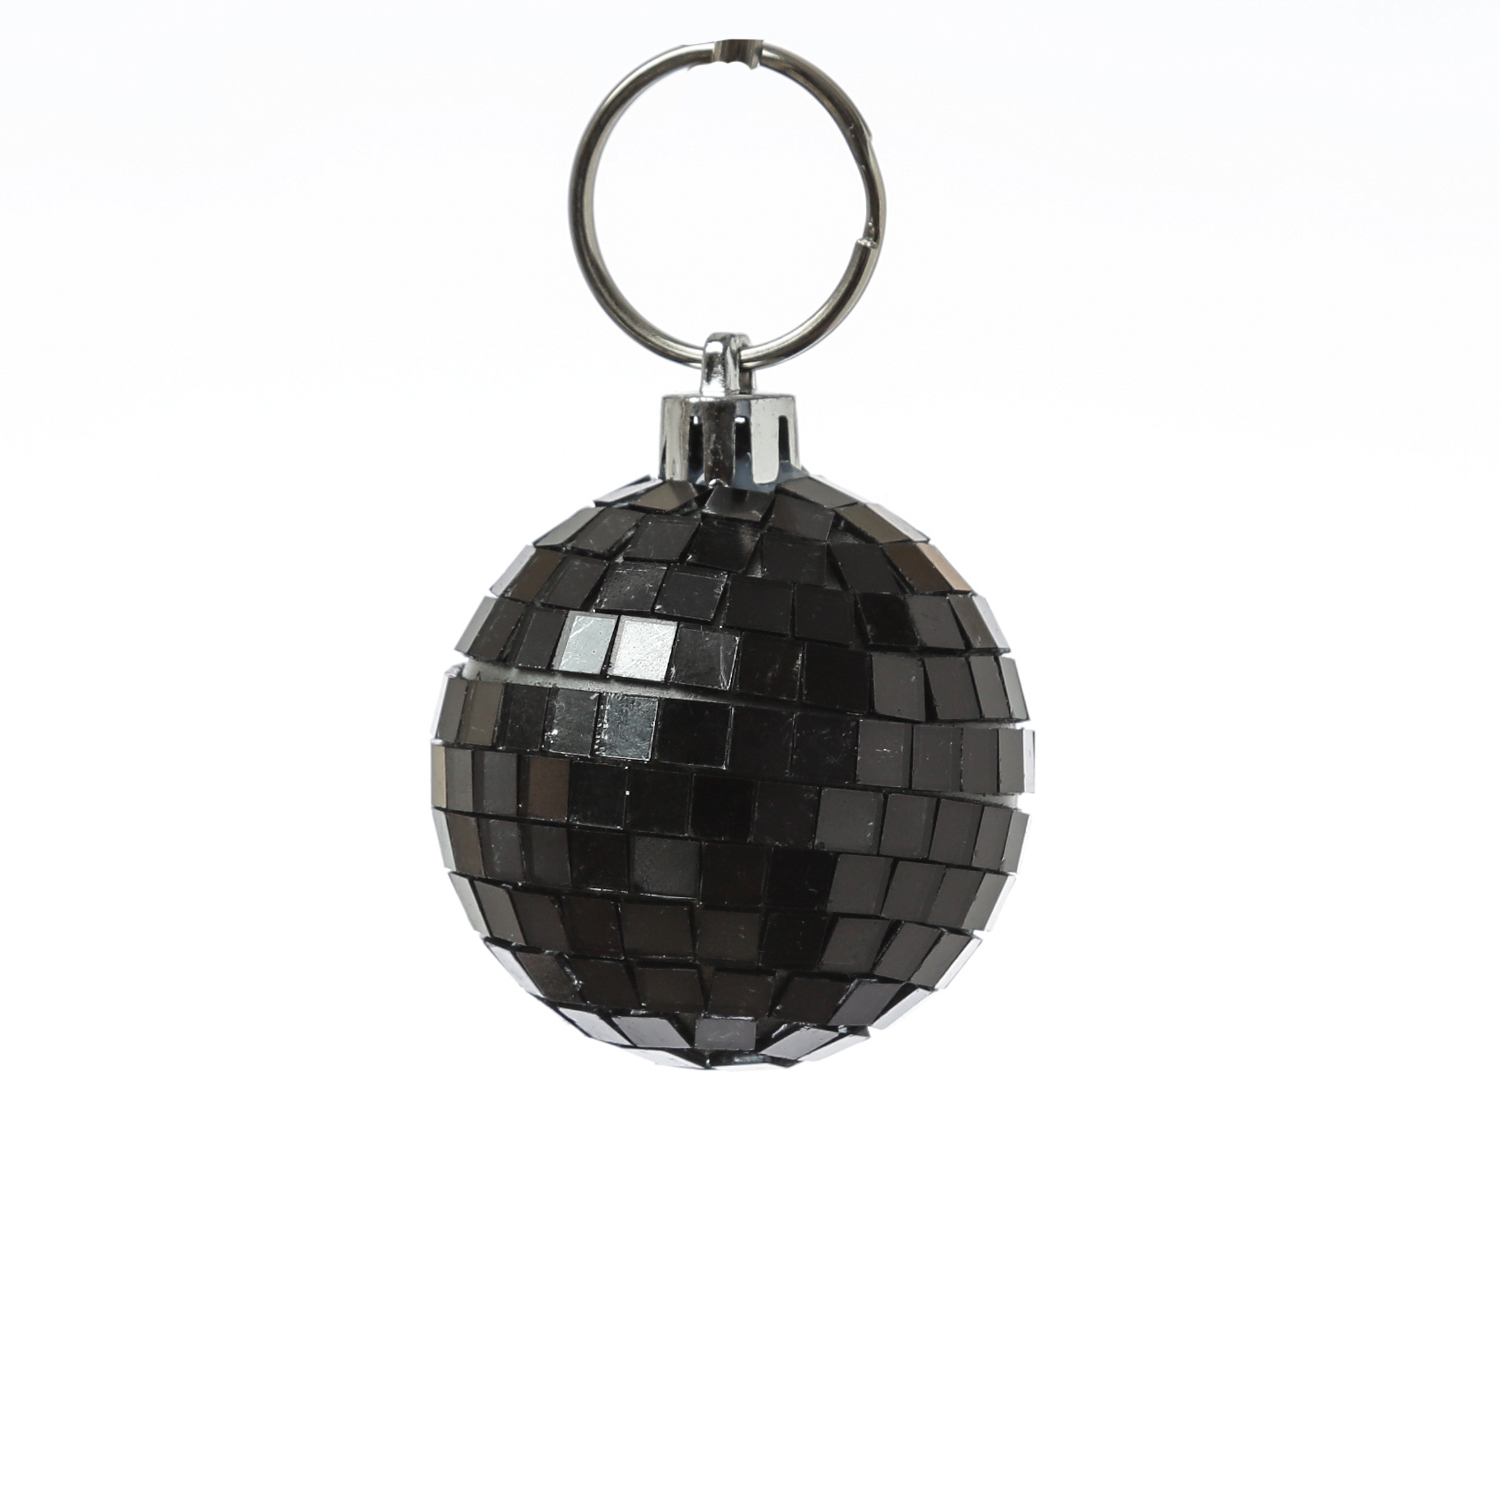 Spiegelkugel 5cm schwarz- Discokugel Echtglas zur Dekoration - mirrorball black